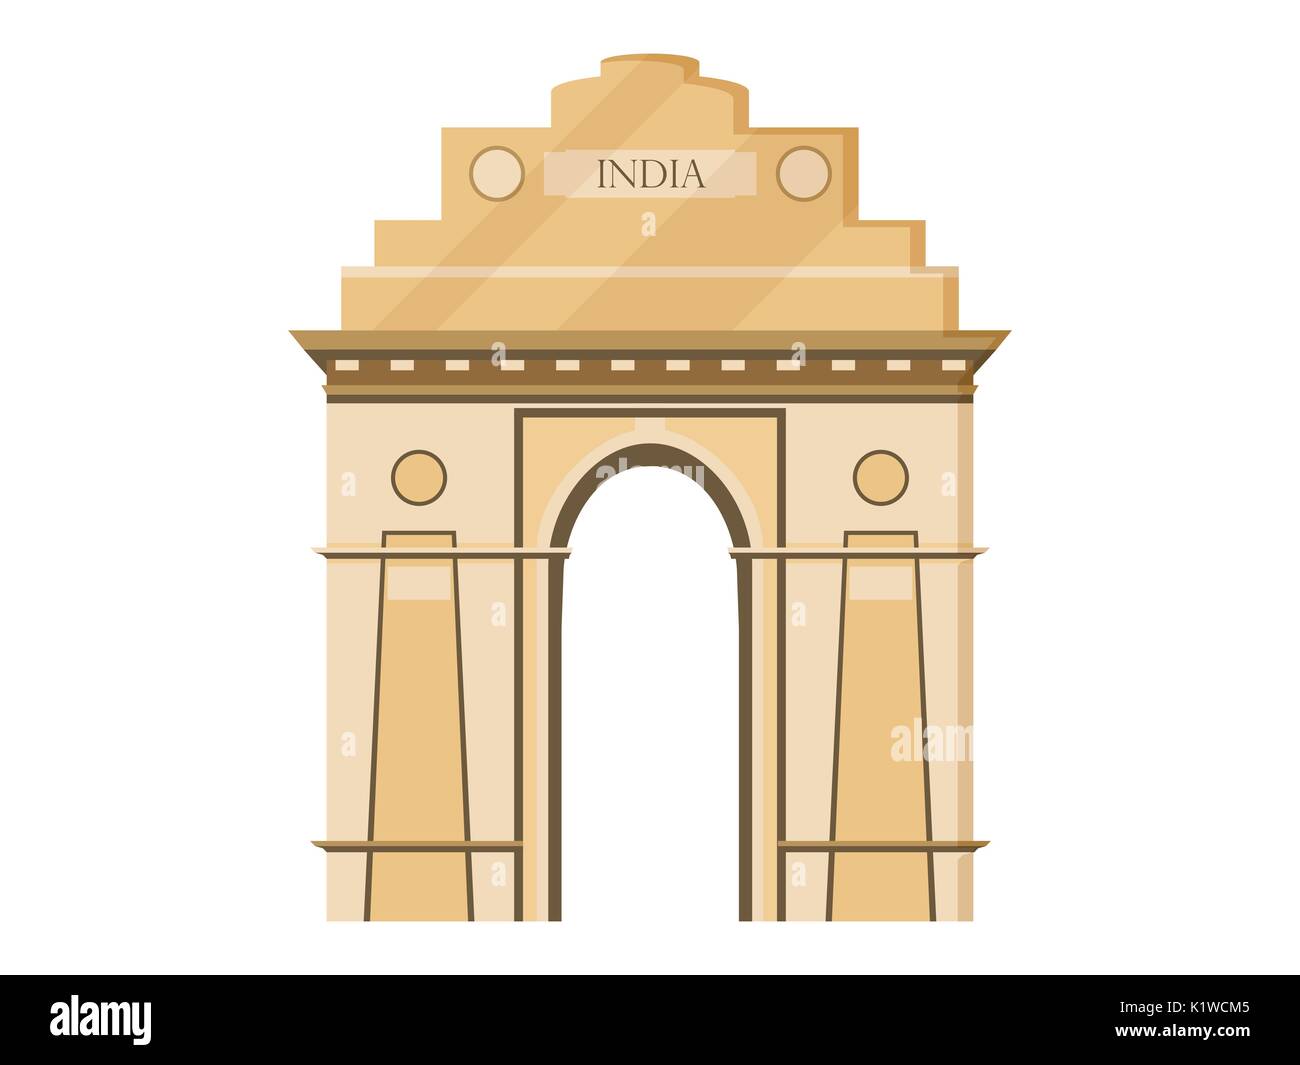 La porte de l'Inde l'isolement sur un fond blanc. Symbole de l'Inde, New Delhi. Illustration dans un style. Vecteur. Illustration de Vecteur